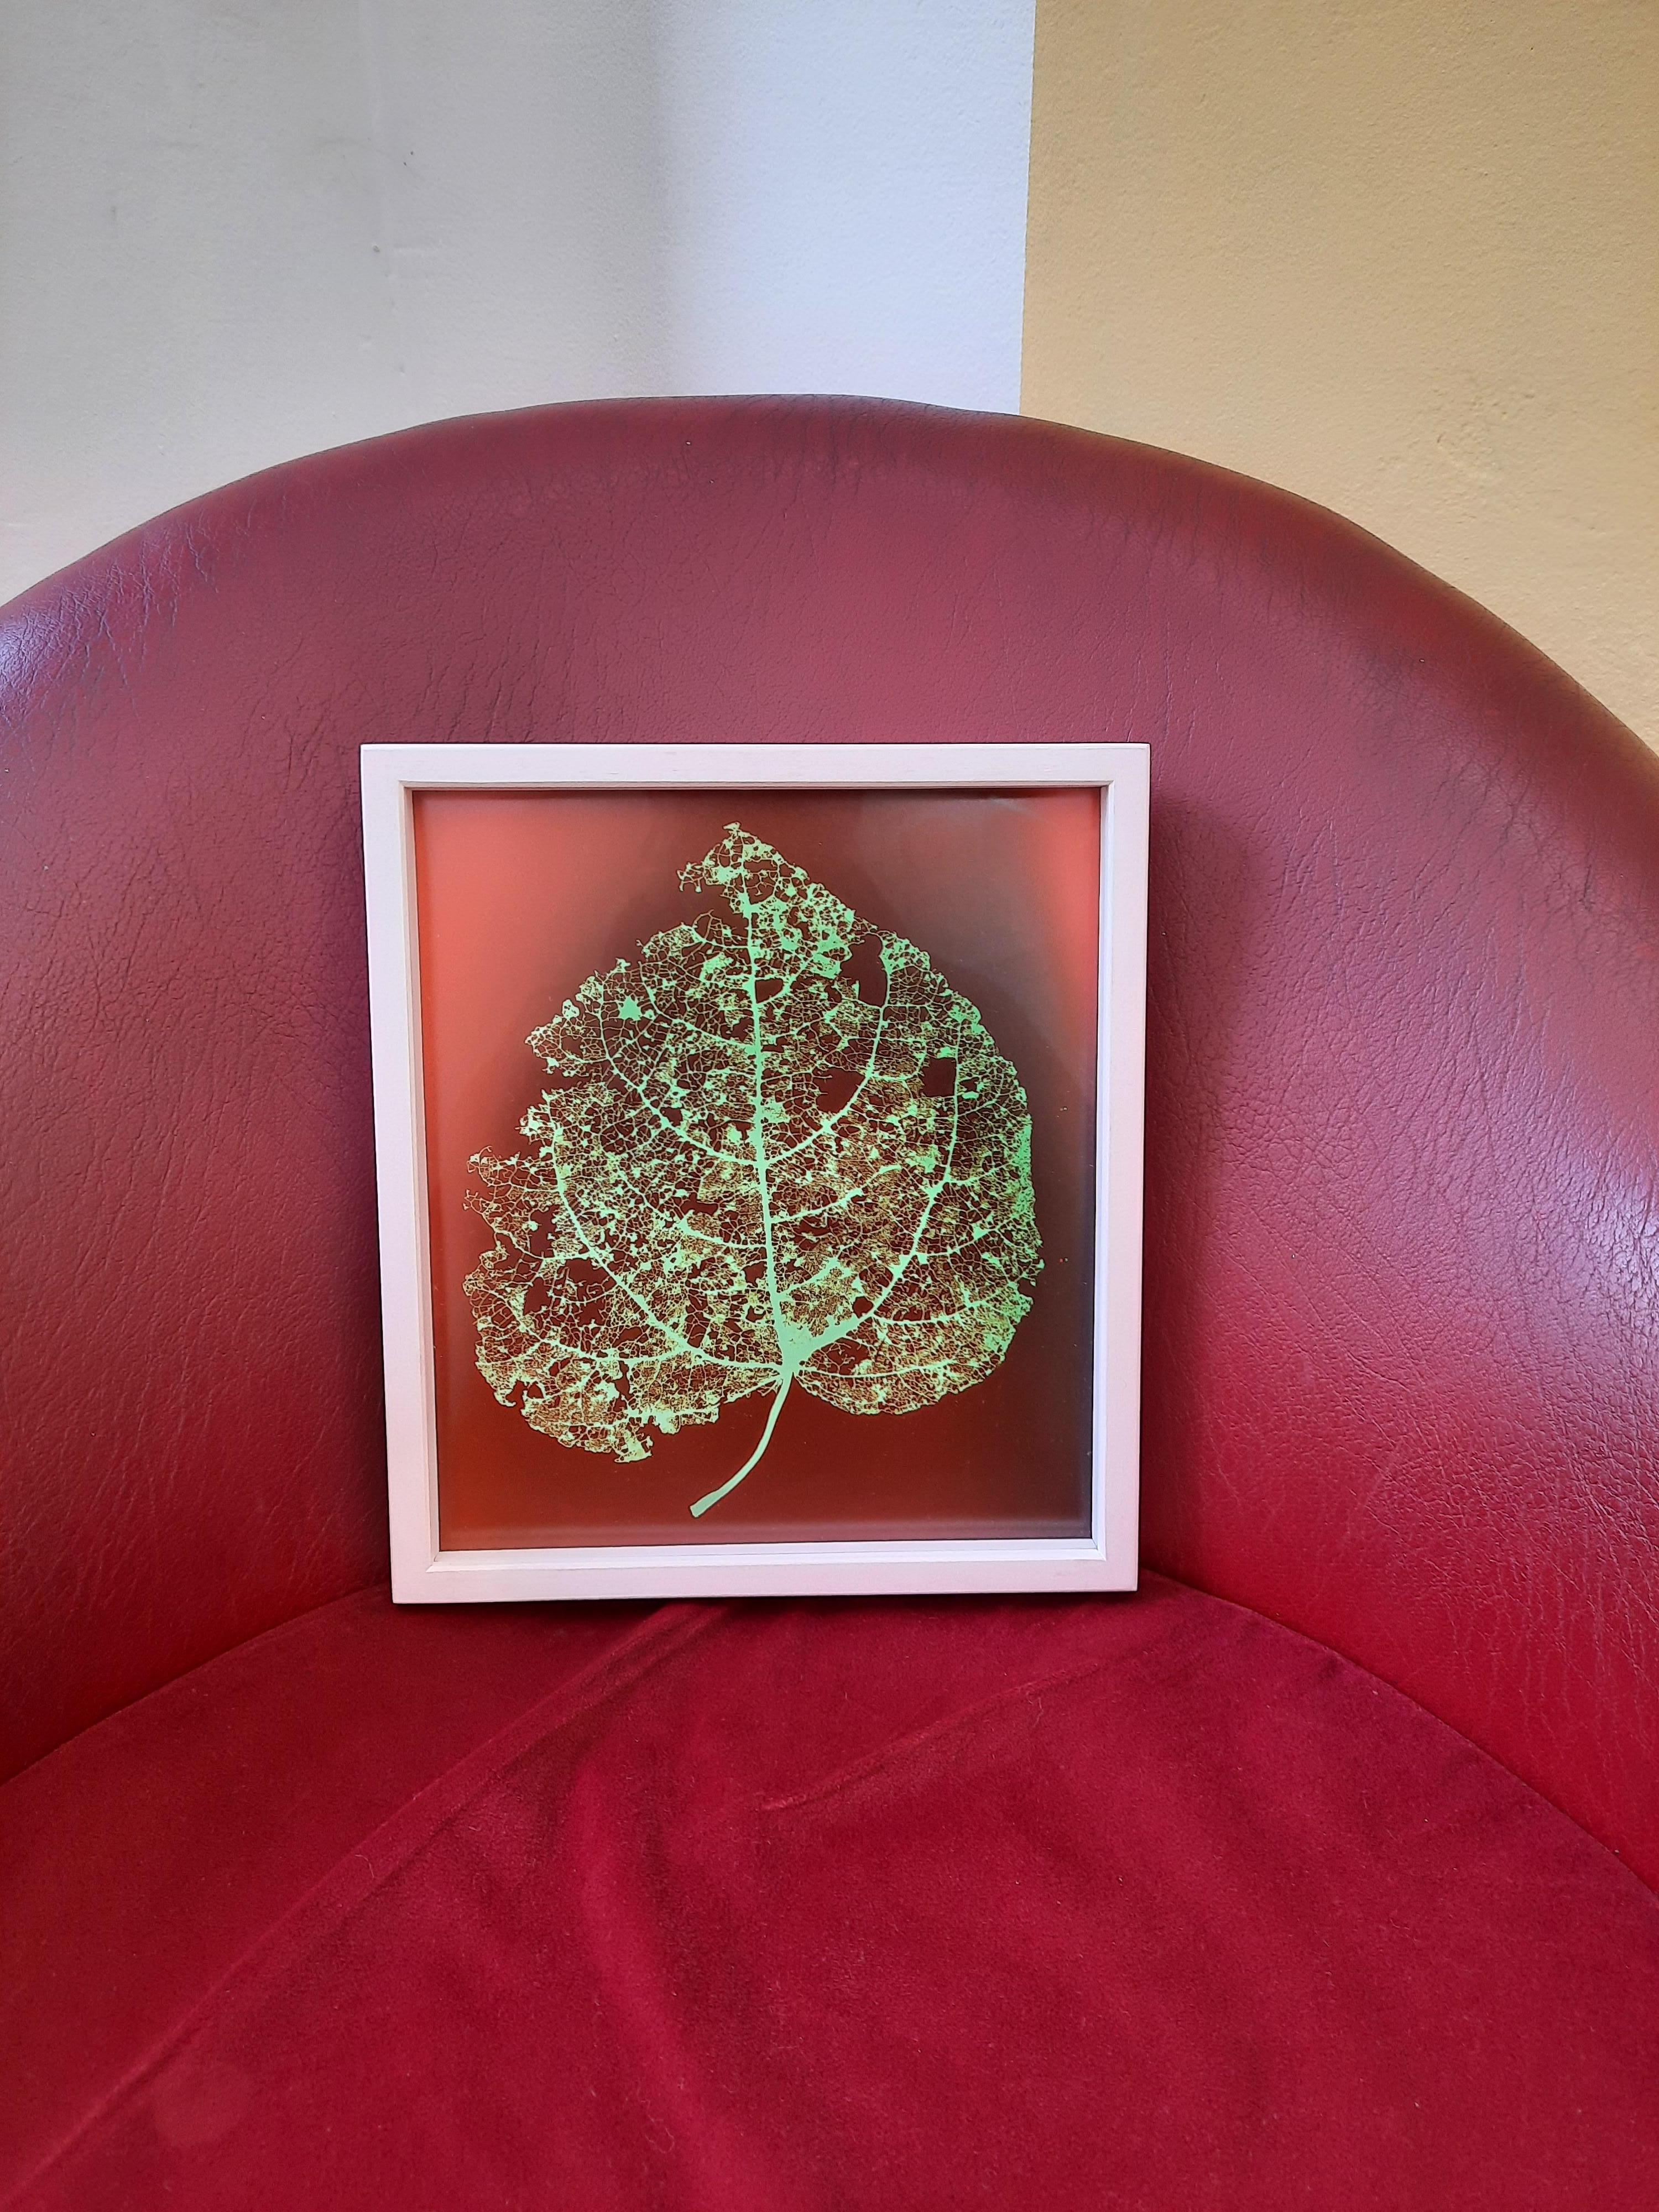 Bäume (Nr. 20/4) - Fotogramm mit roten und grünen Blättern
2022
Fotogramm, gerahmt
25 x 22 cm
Einzelexemplar, signiert

Die Fotogrammserie 